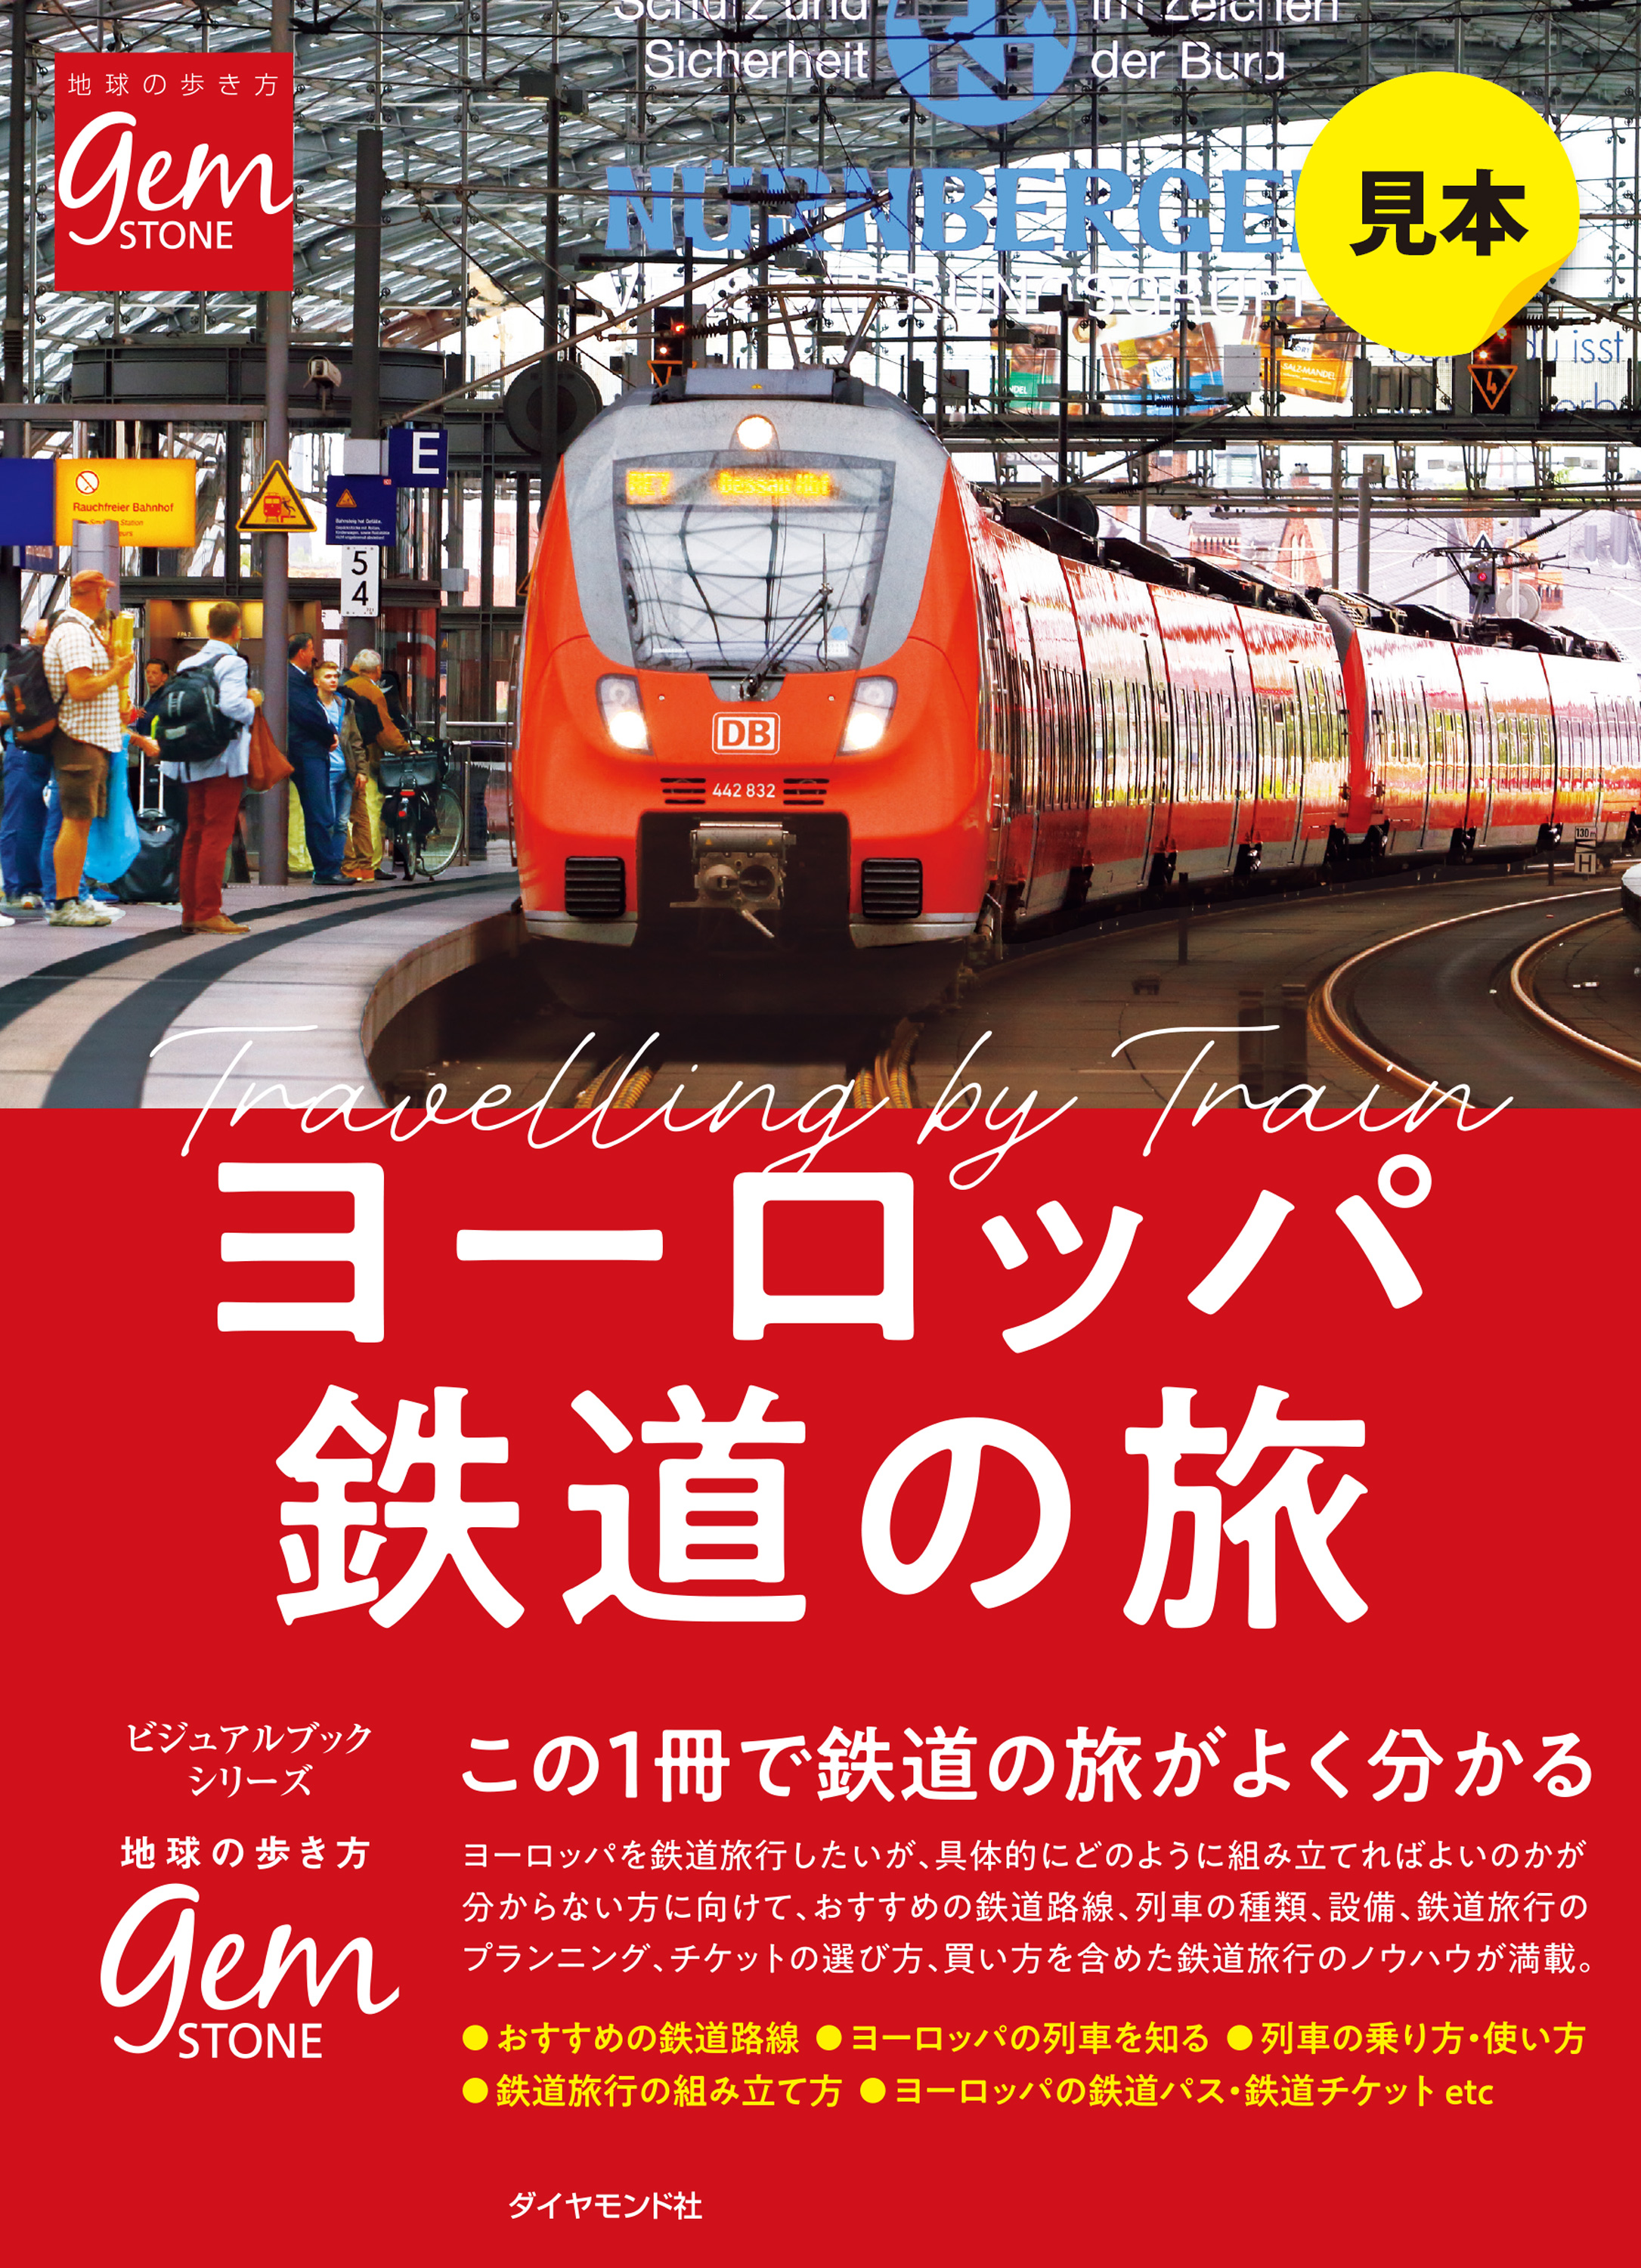 ヨーロッパ鉄道の旅 はじめてでもよく分かる【見本】(書籍) - 電子書籍